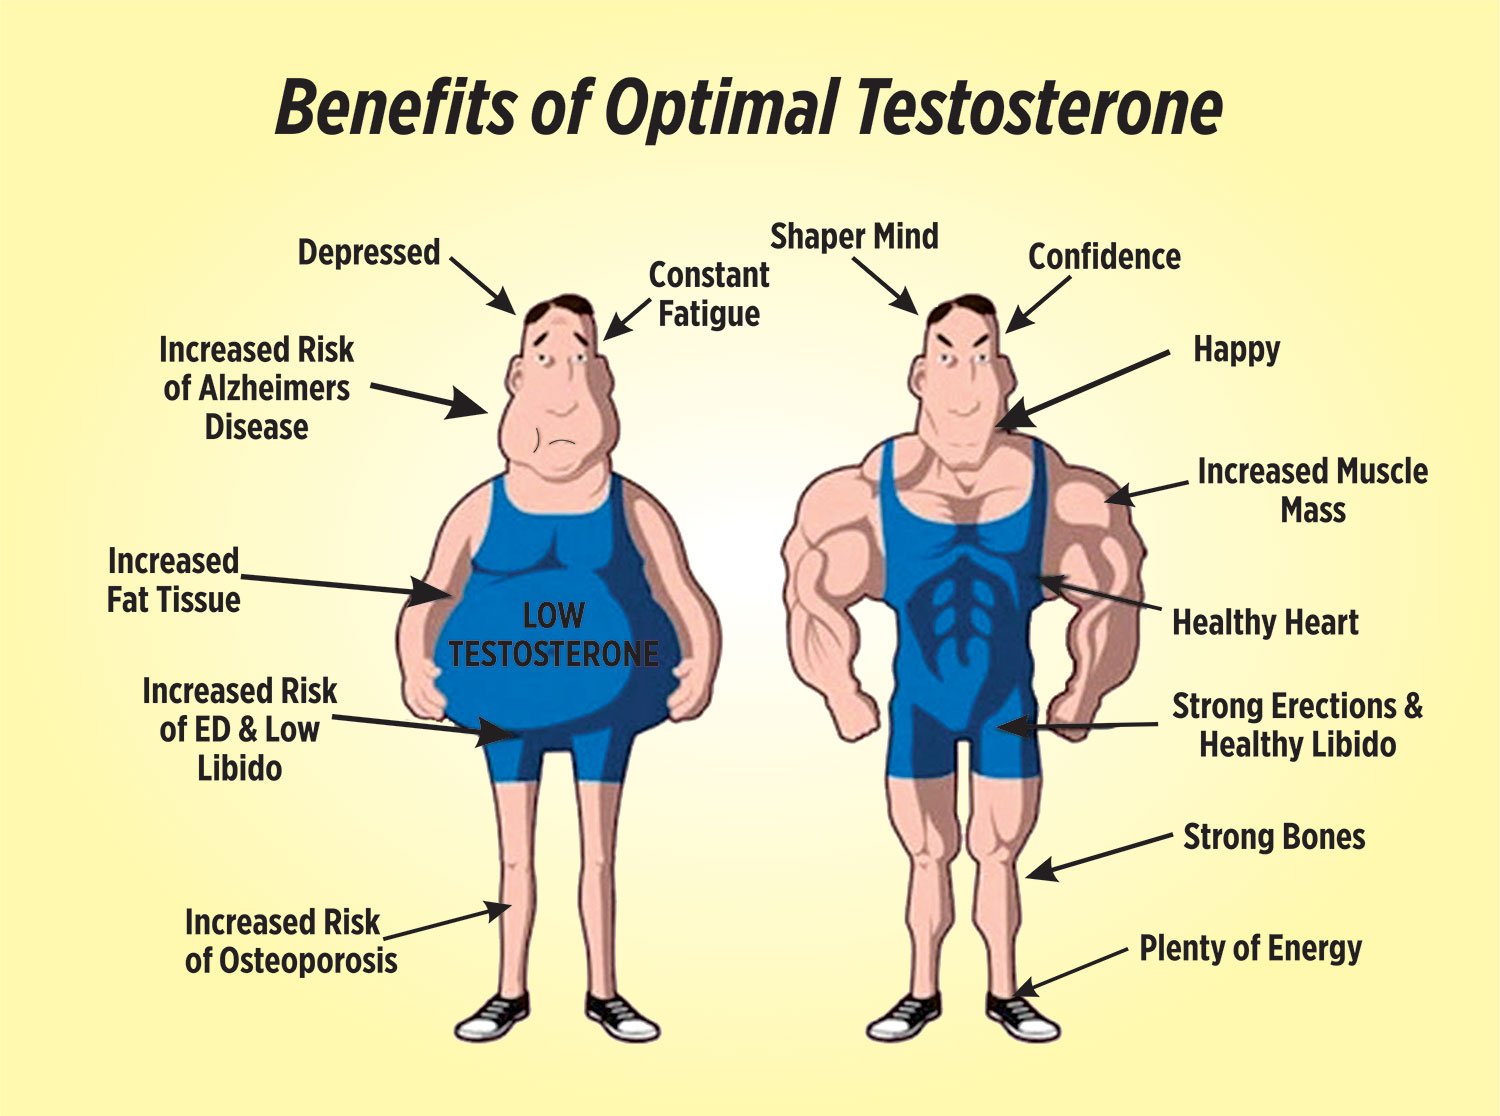 тестостерон на размер члена фото 35